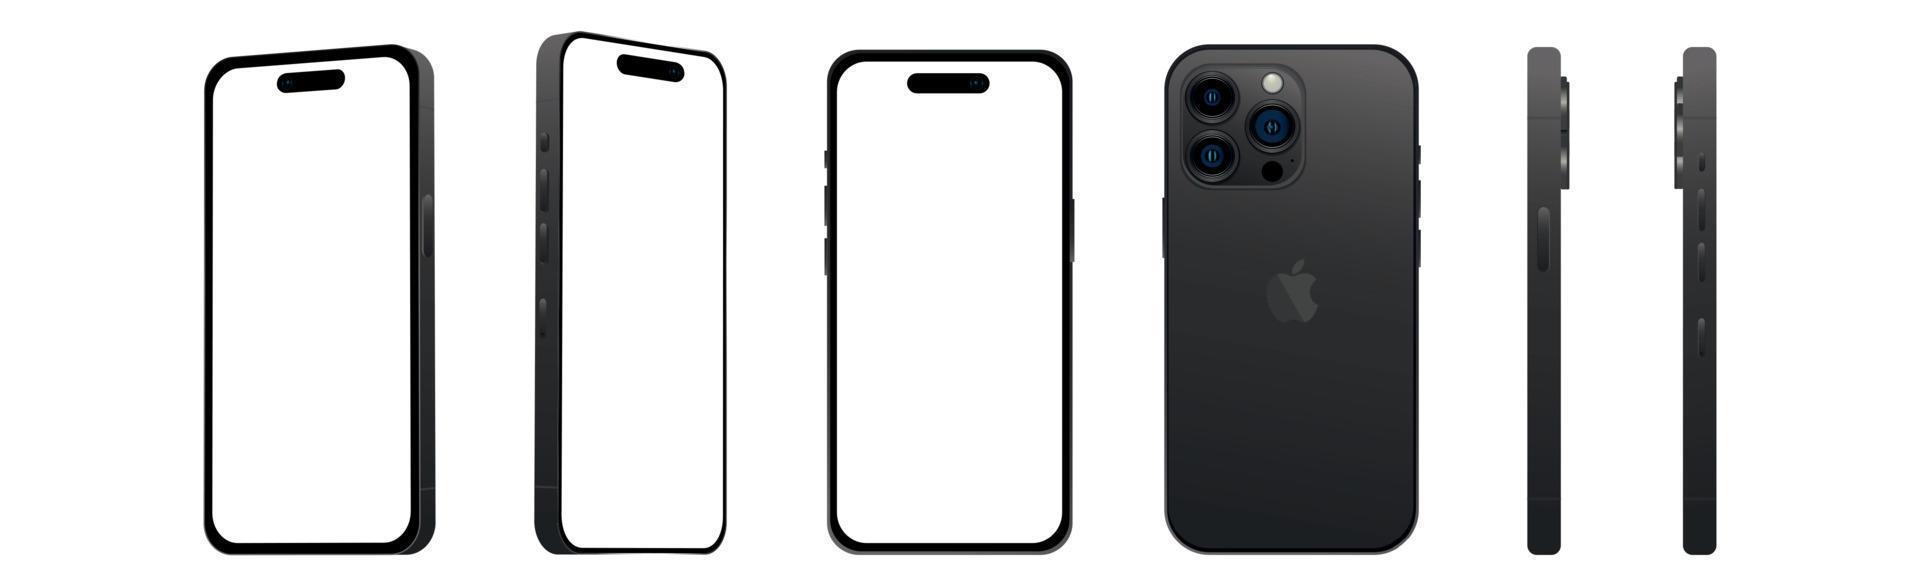 conjunto de 6 pcs ângulos diferentes, preto pro smartphone apple iphone 14 modelos, nova indústria de ti, maquete para web design em um fundo branco - vetor